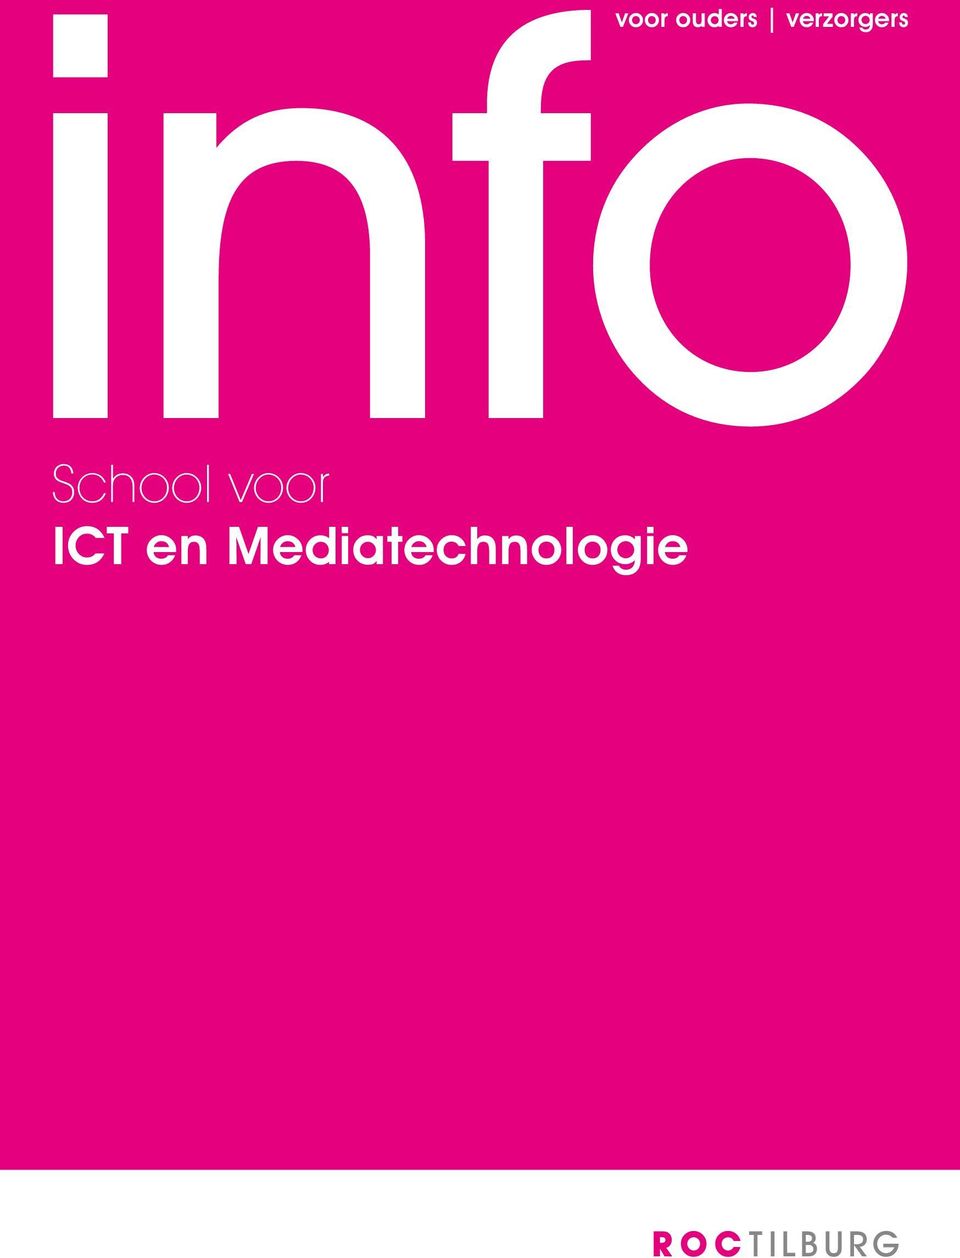 School voor ICT